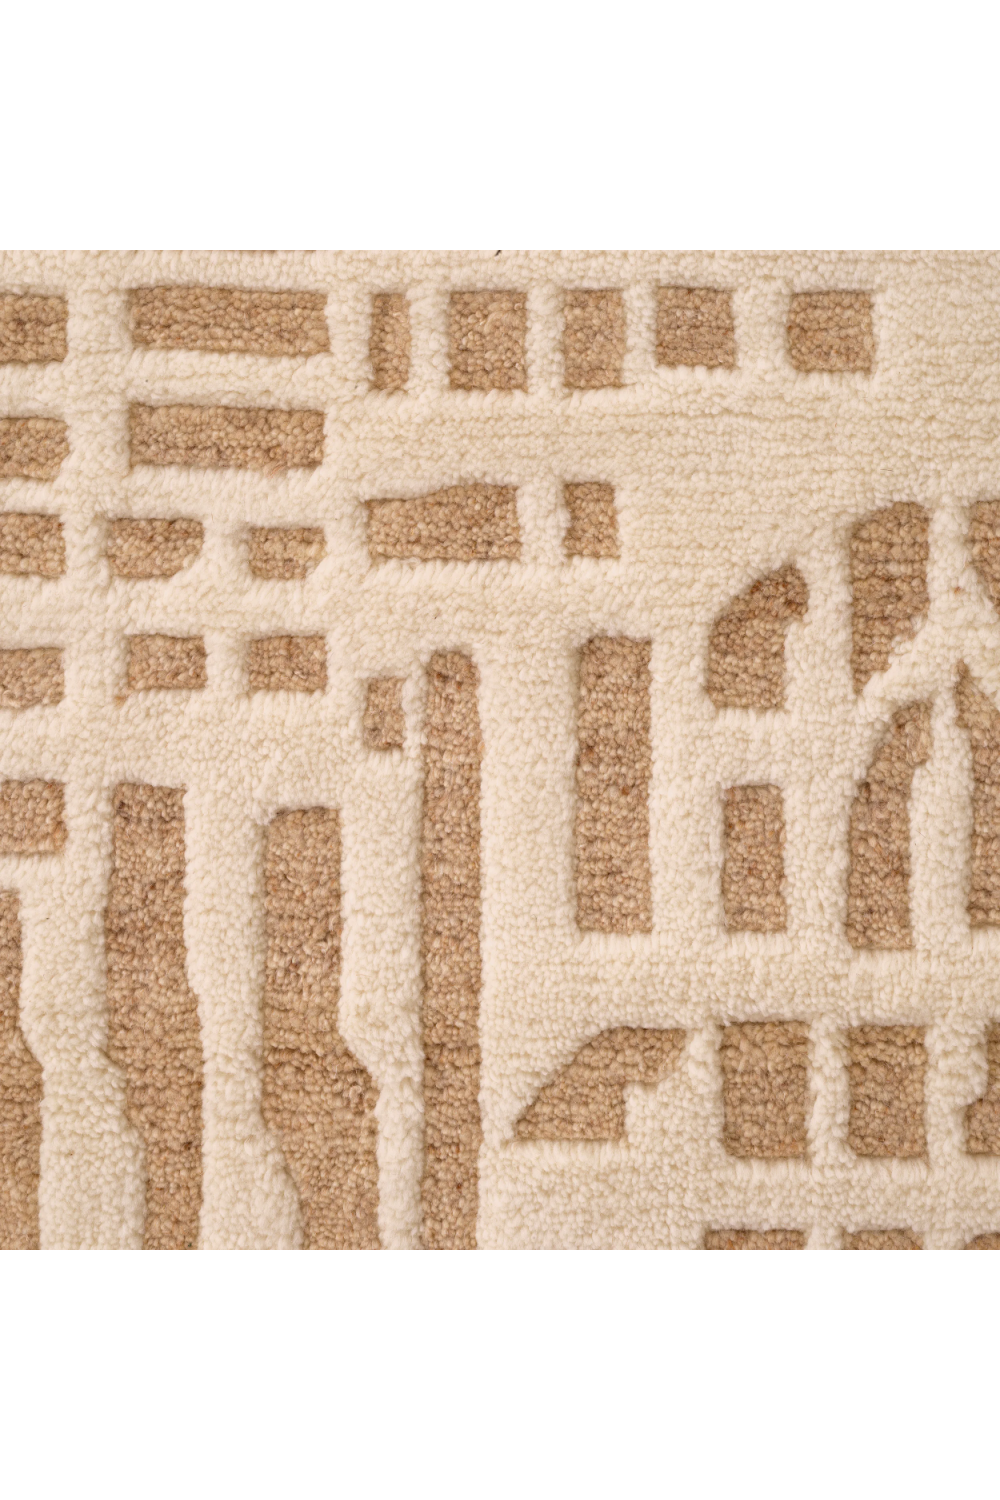 Cream Wool Carpet | Eichholtz Elyn | Oroa.com